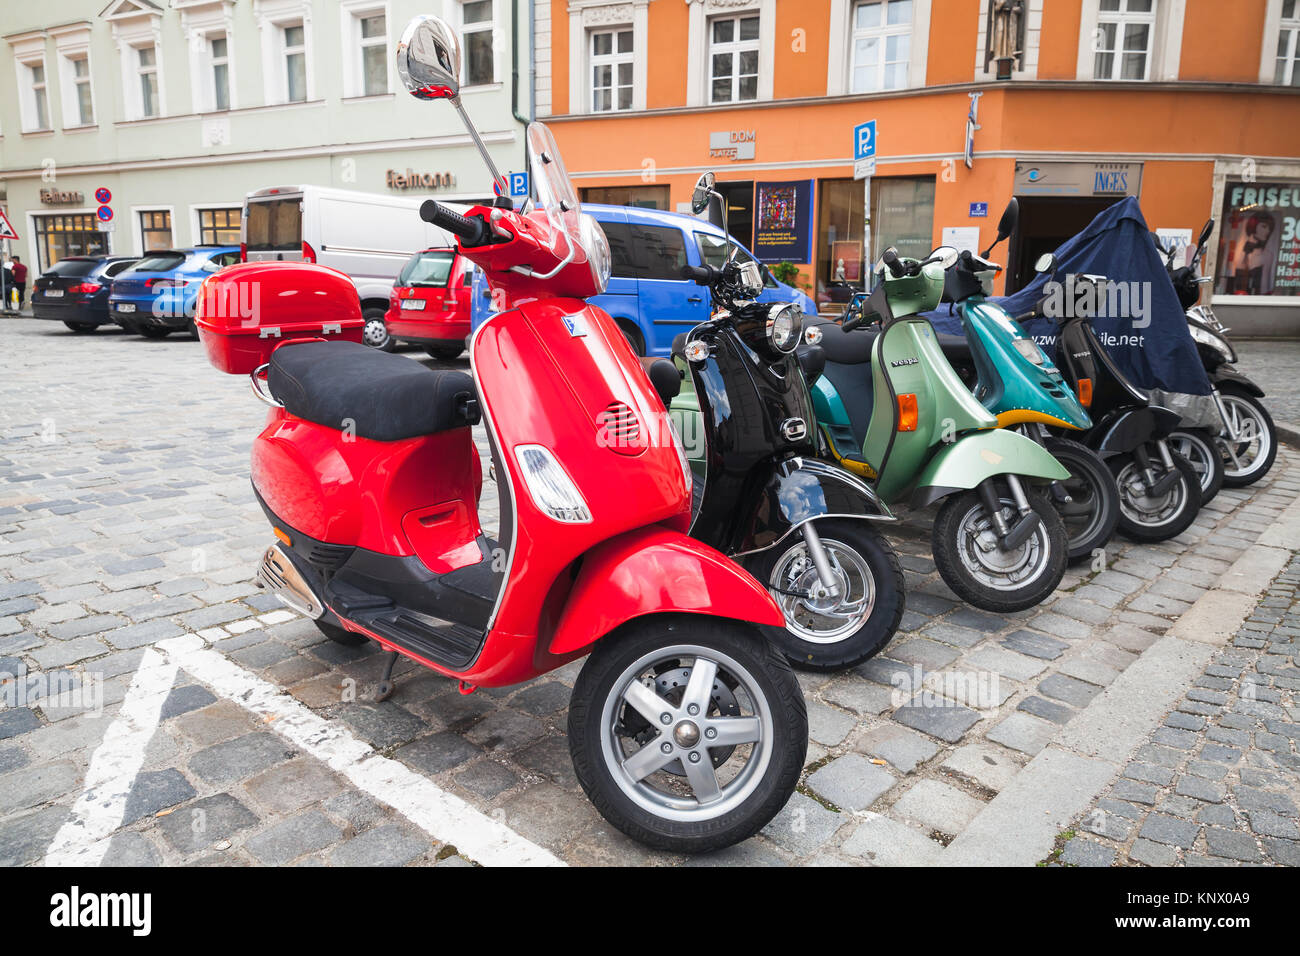 Regensburg, Deutschland - Mai 5, 2017: Bunte Vespa Roller stehen in einer Reihe auf einem Parkplatz im alten Europäischen Stadt Stockfoto